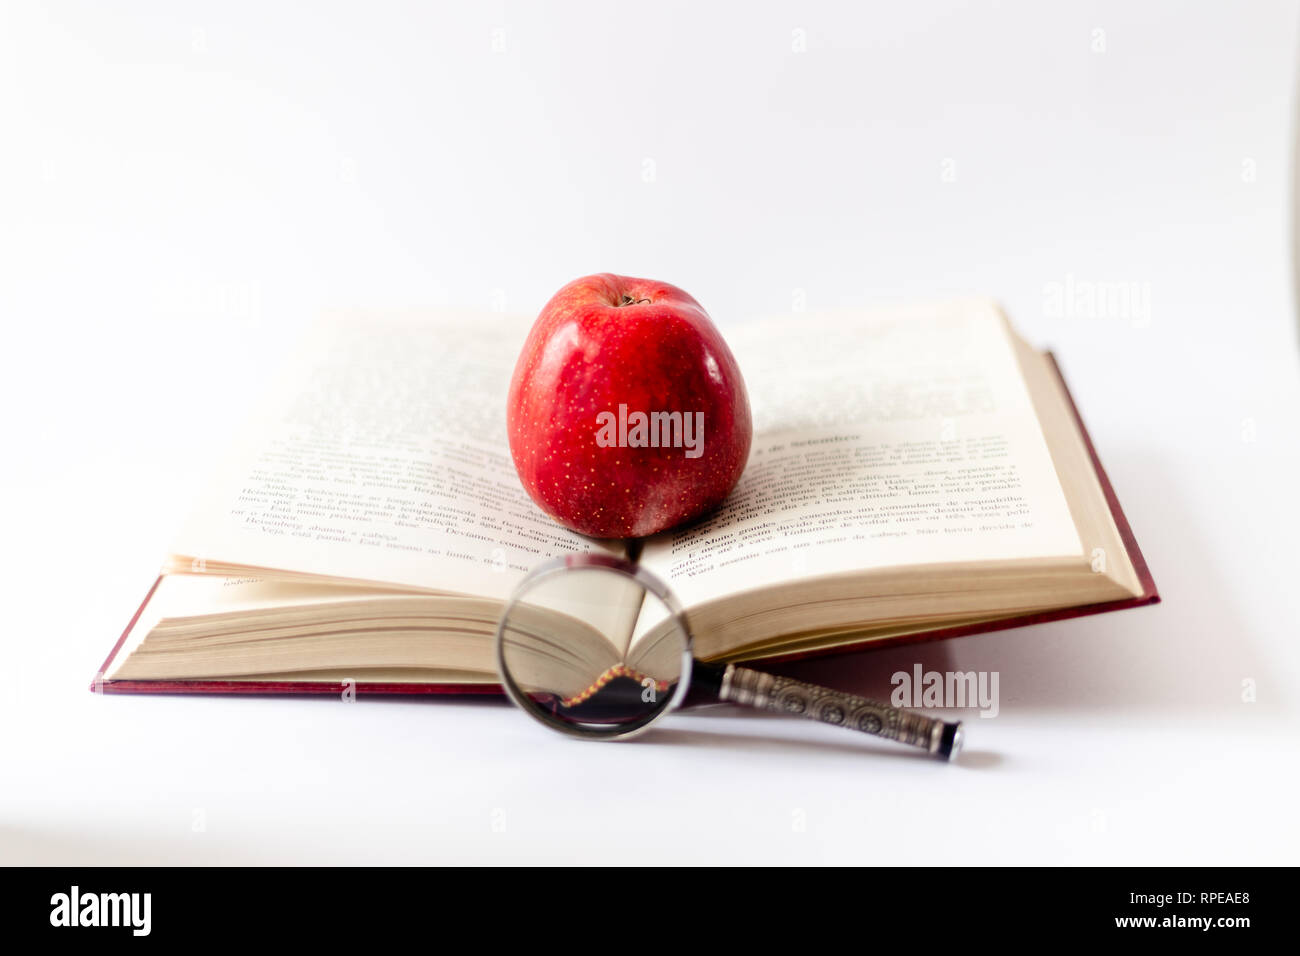 Buch, Lupe und Apfel auf dem Tisch. Das Buch mit dem roten Apfel öffnen. Zum ersten Mal in der Schule. Grundschule. Stockfoto